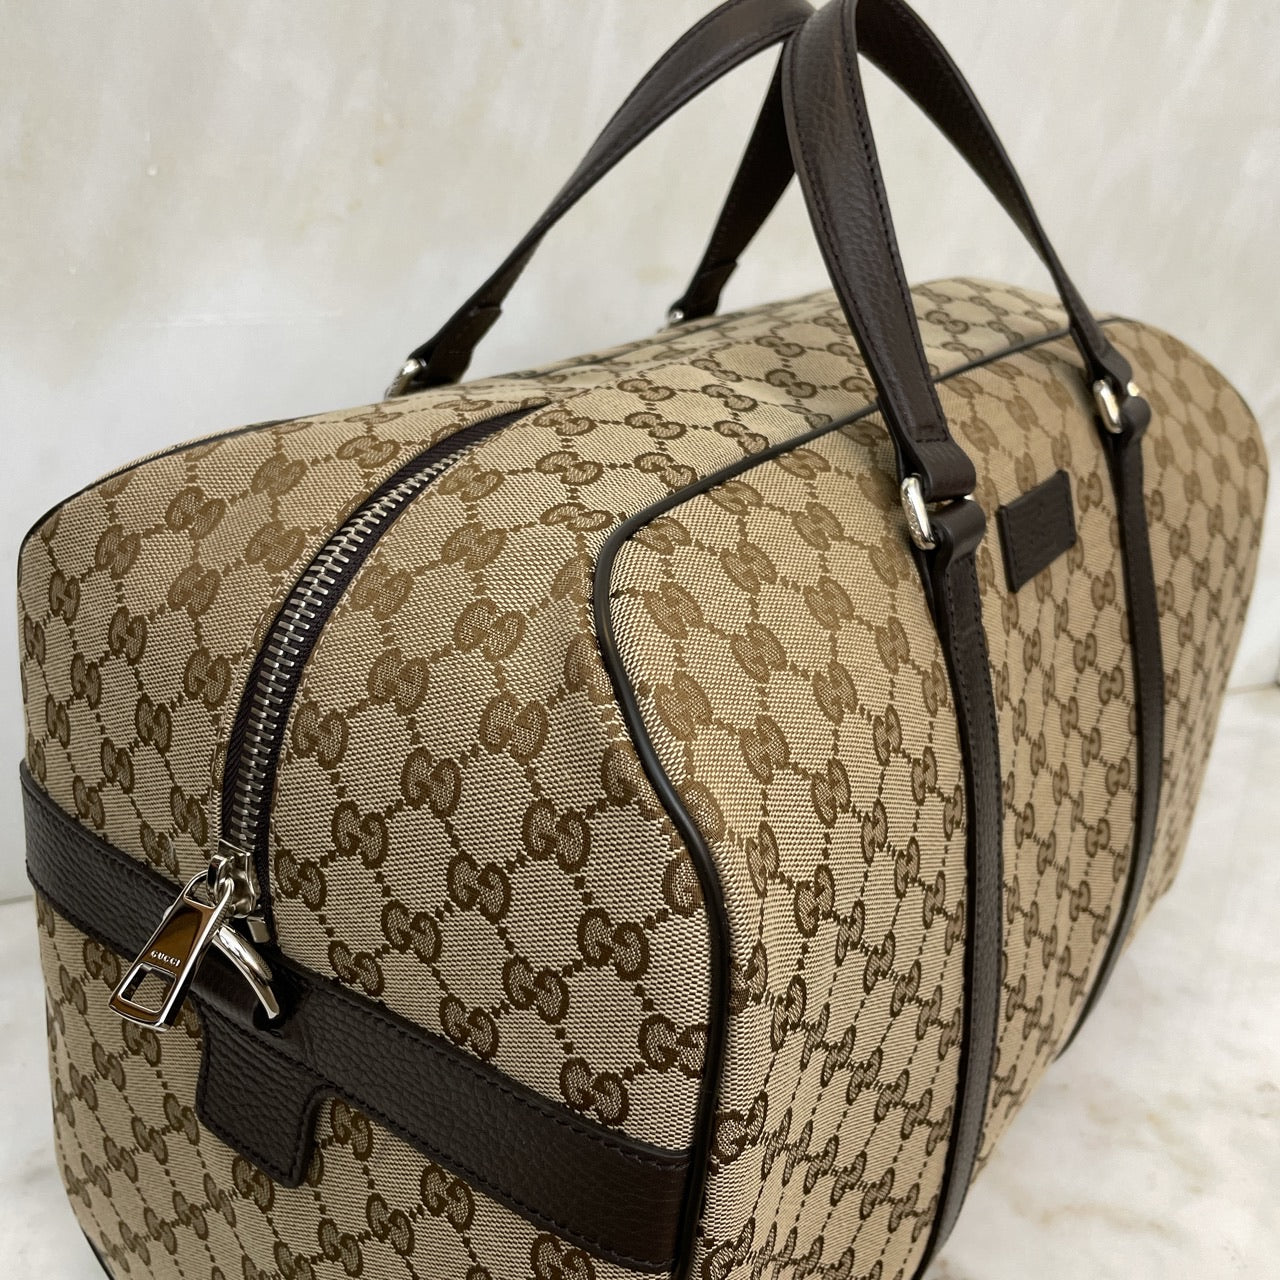 Luggage Gucci. | Gucci luggage, Luxury luggage, Gucci luggage set